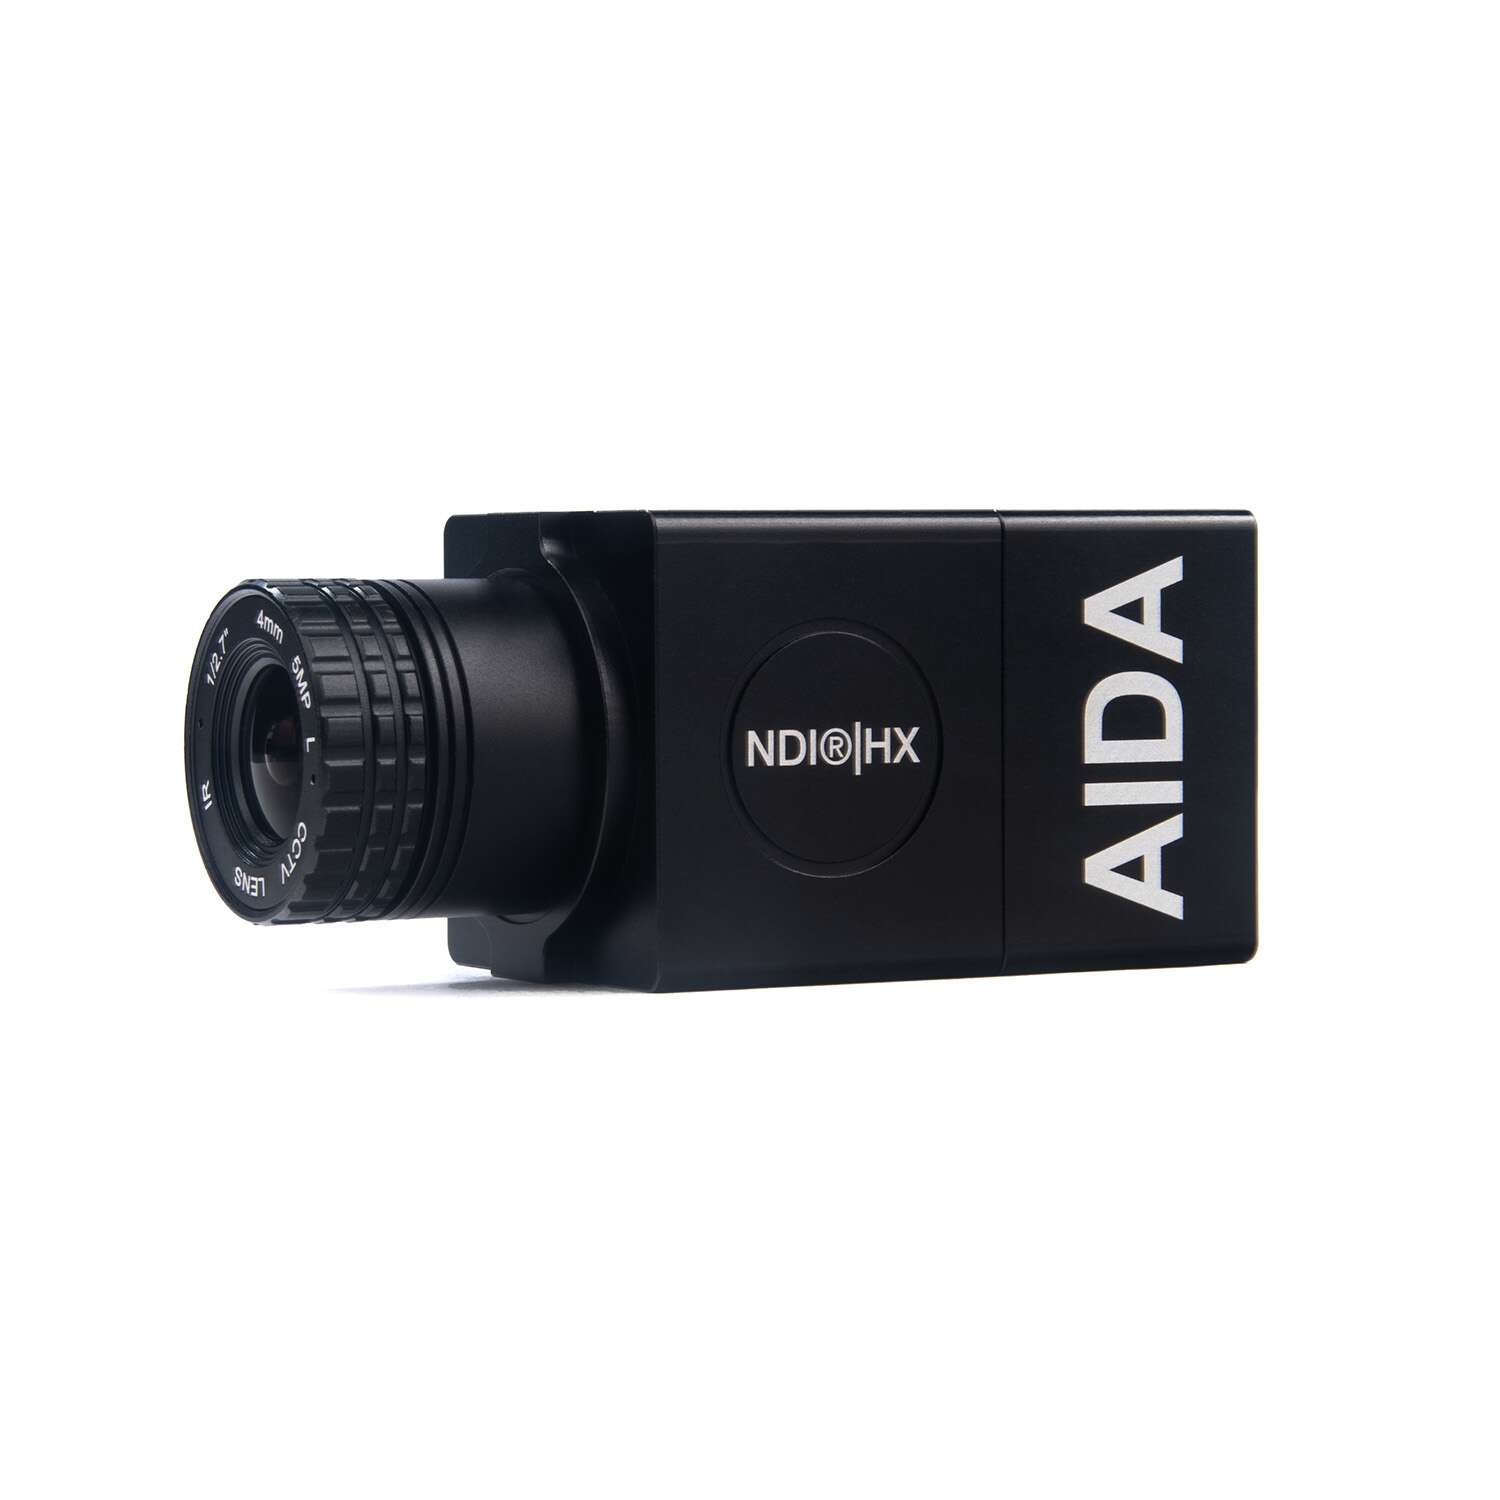 Front view - AIDA Imaging Full HD NDI